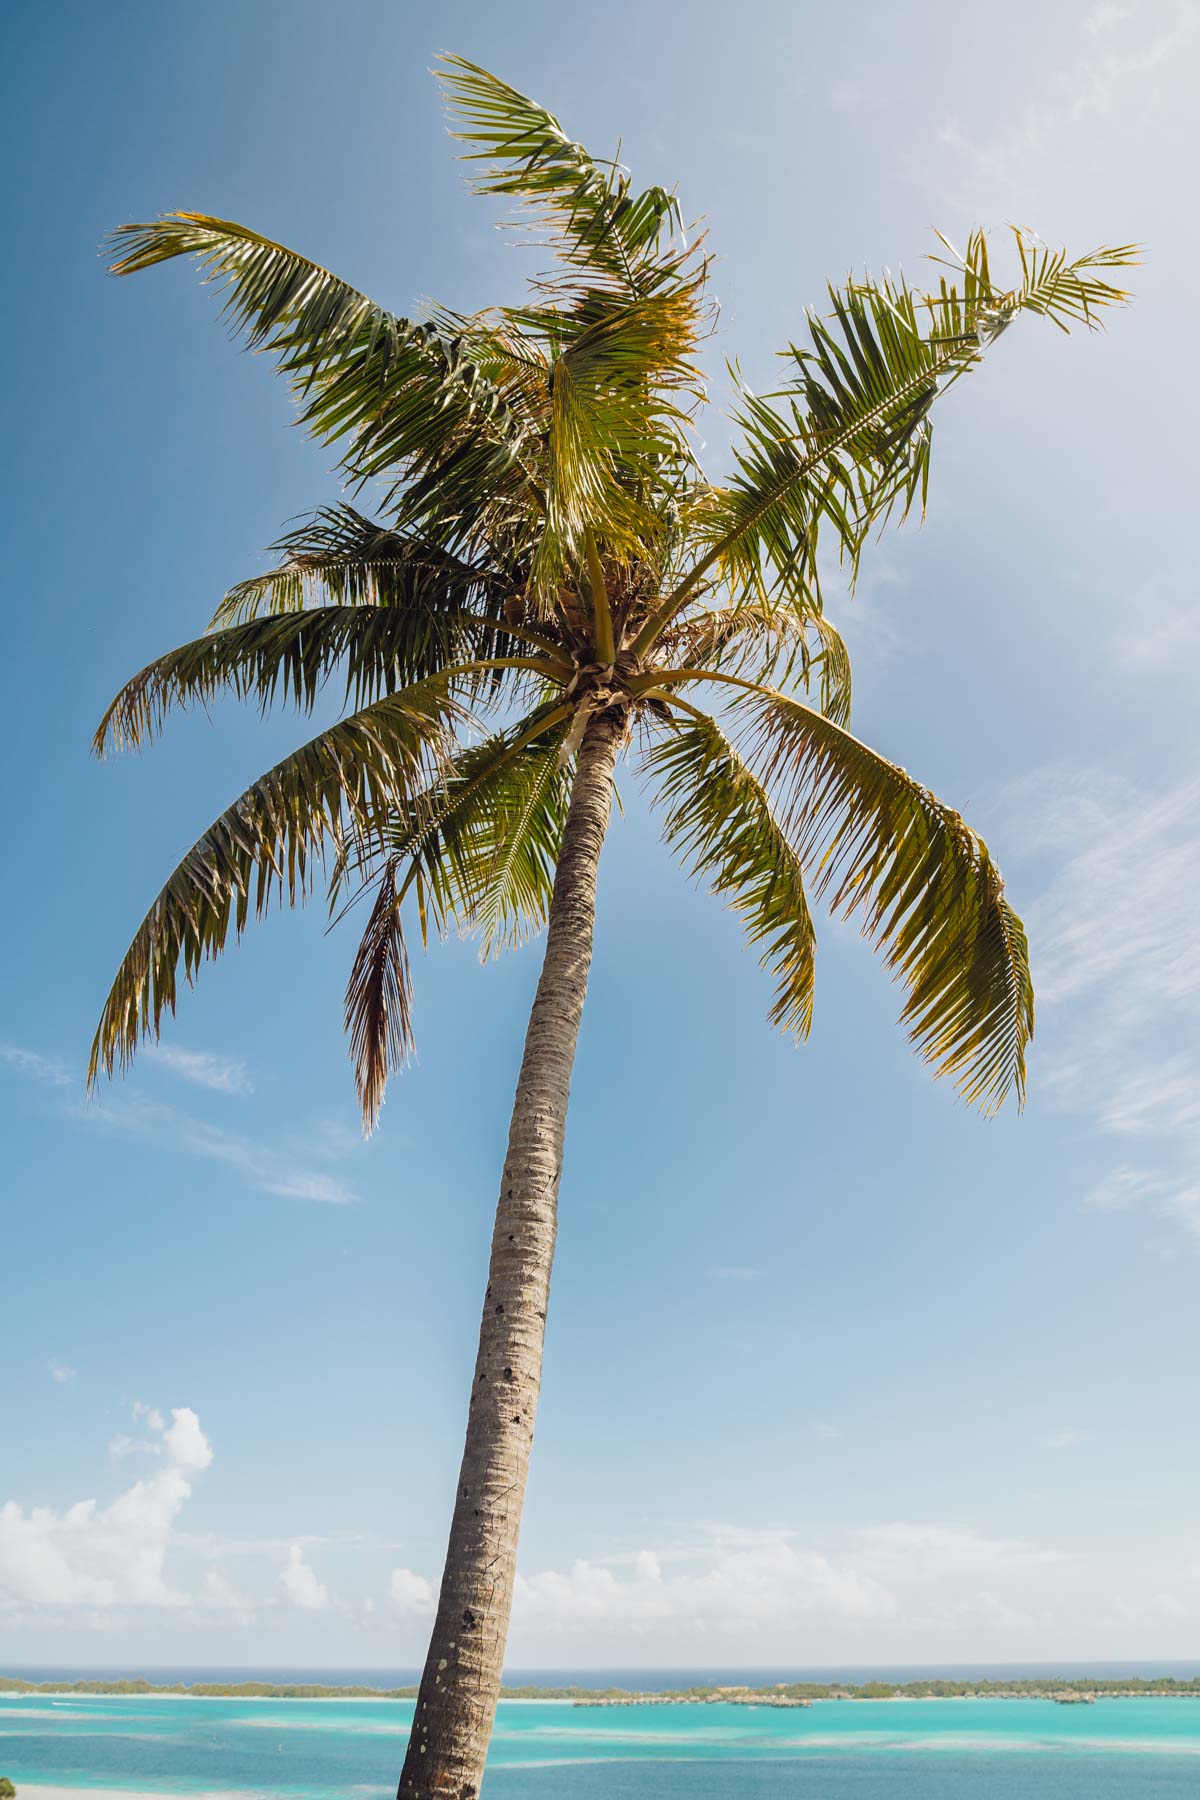 A palmtree and lagoon in Bora Bora